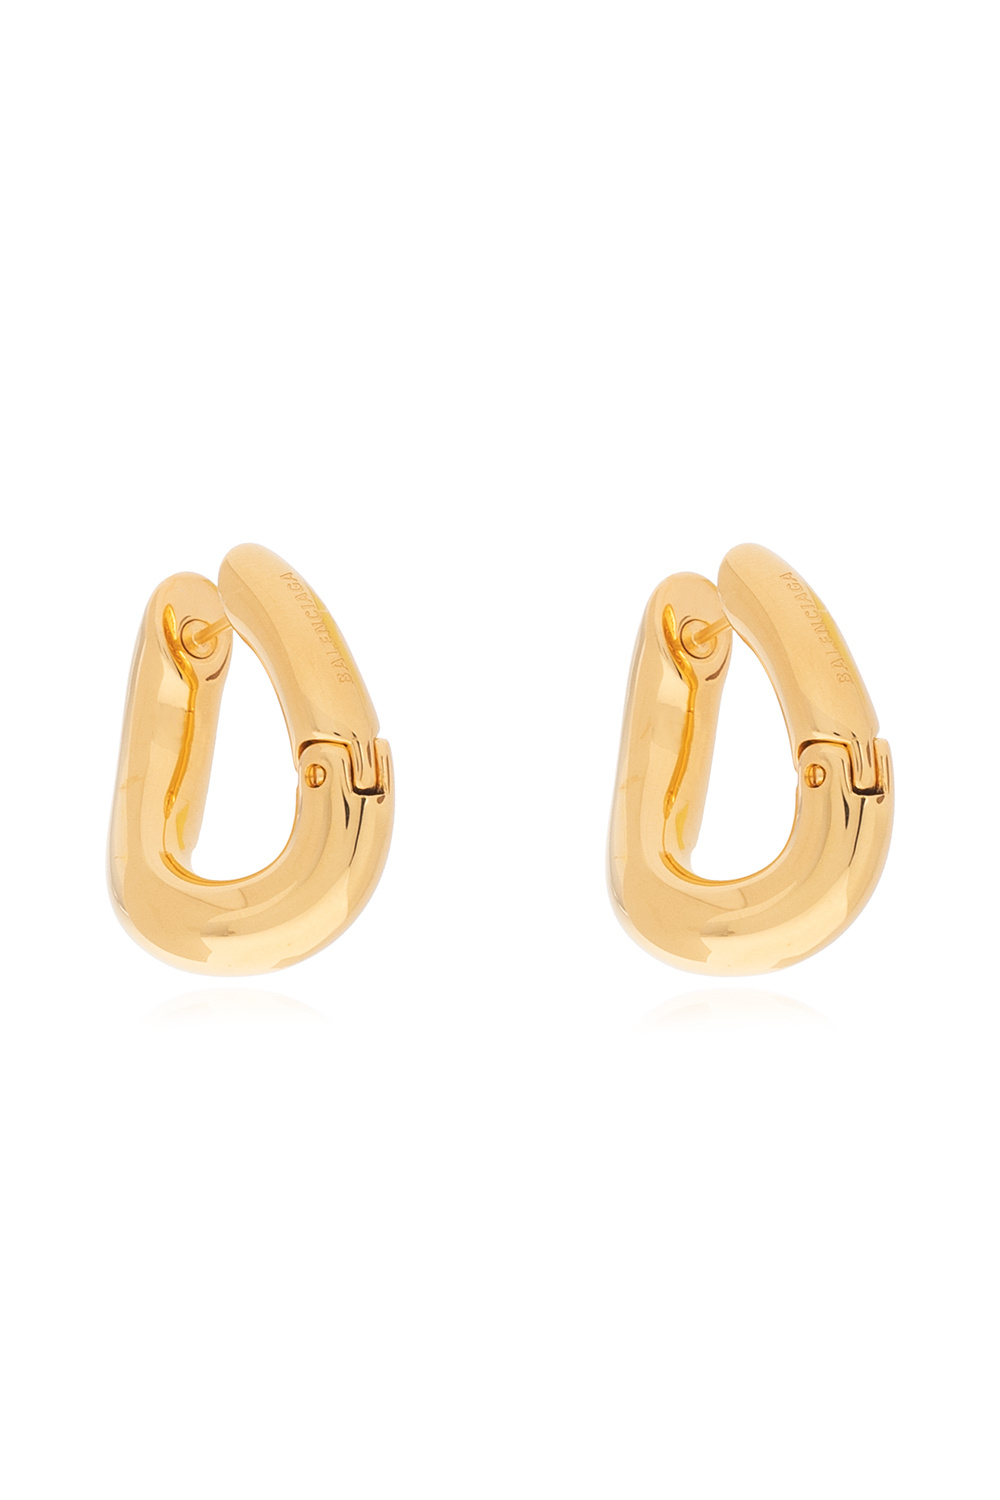 Balenciaga Copper earrings